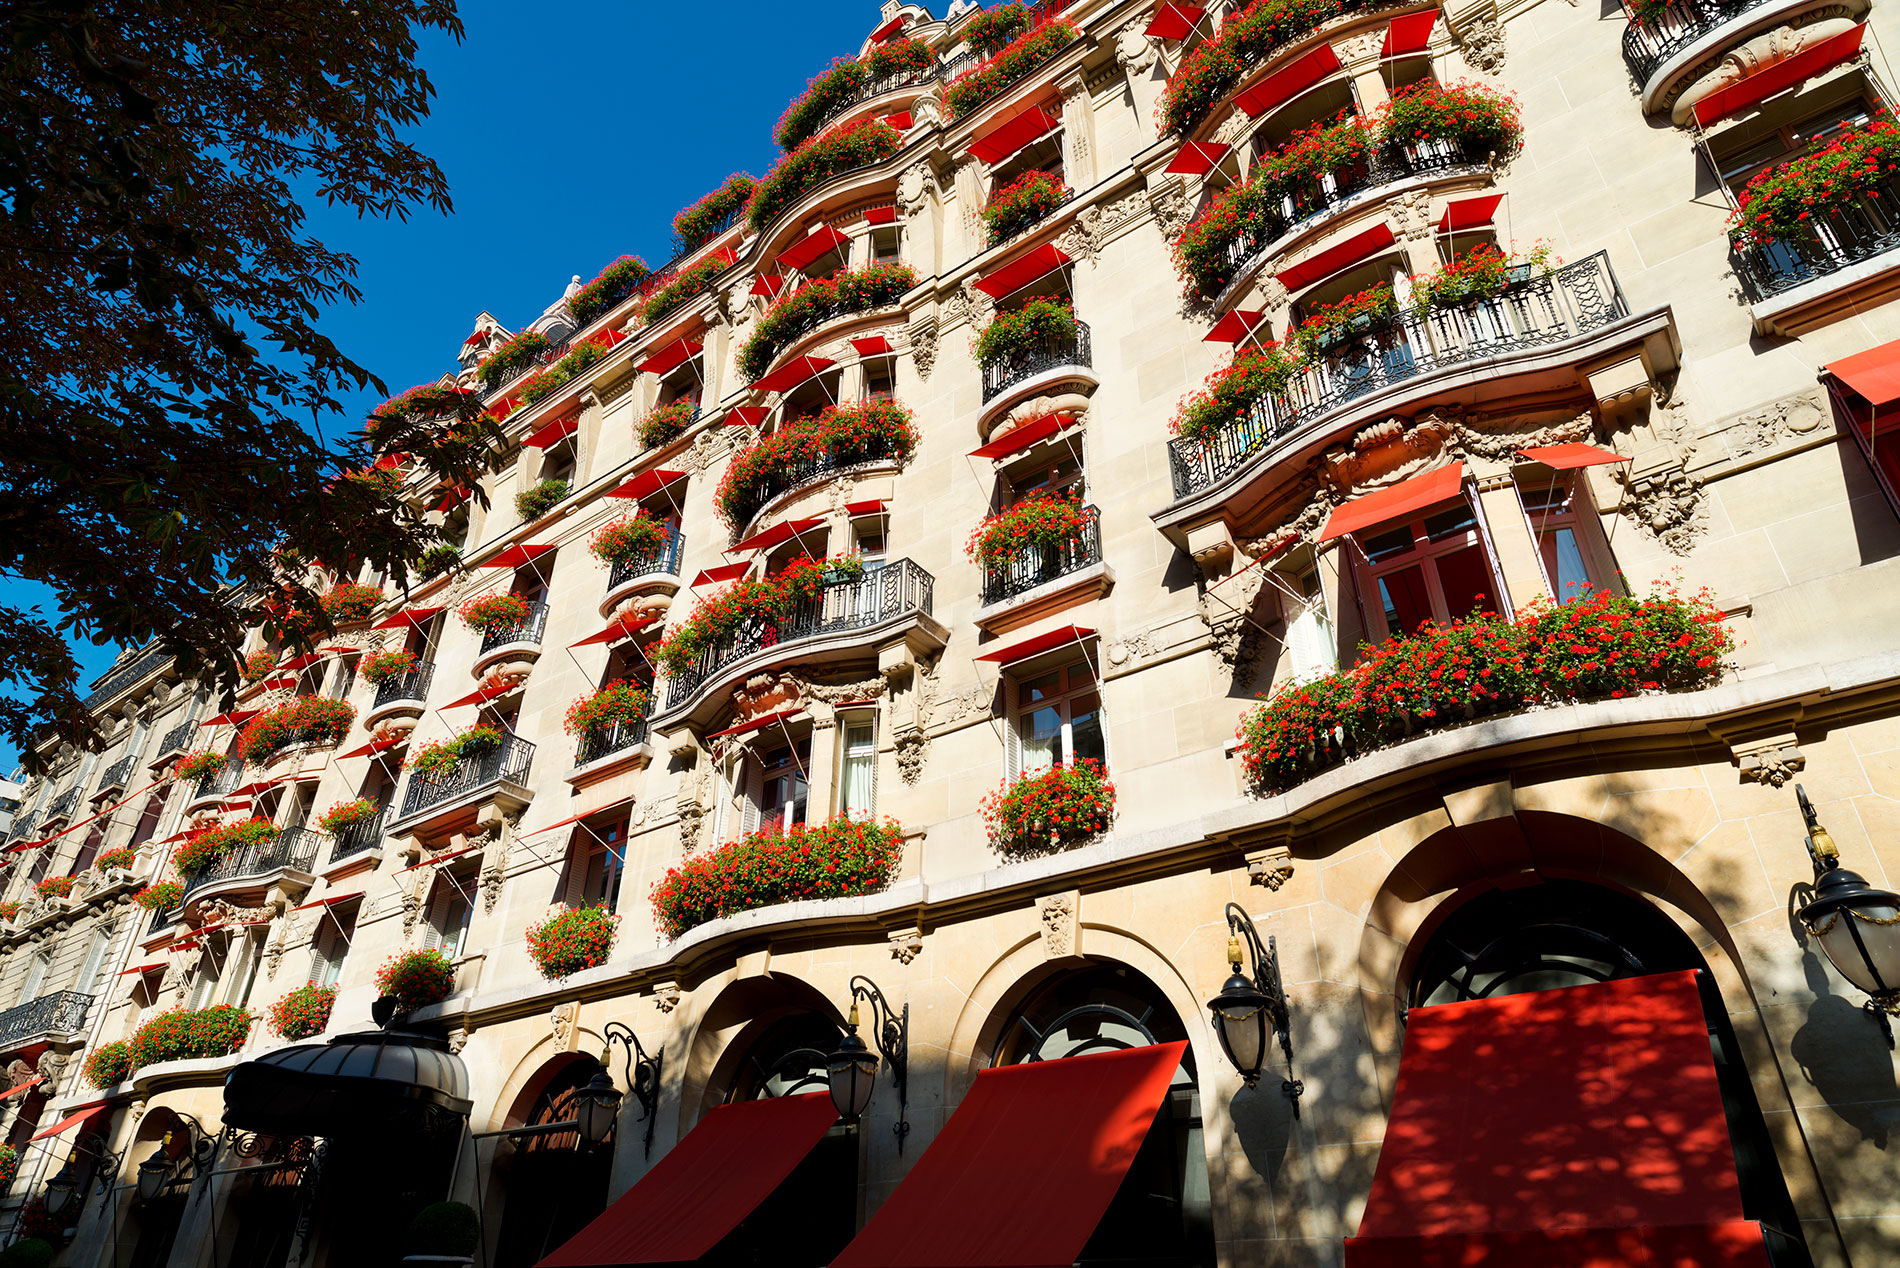 赤い庇がロマンティックな建物はアール・ヌーヴォー建築。